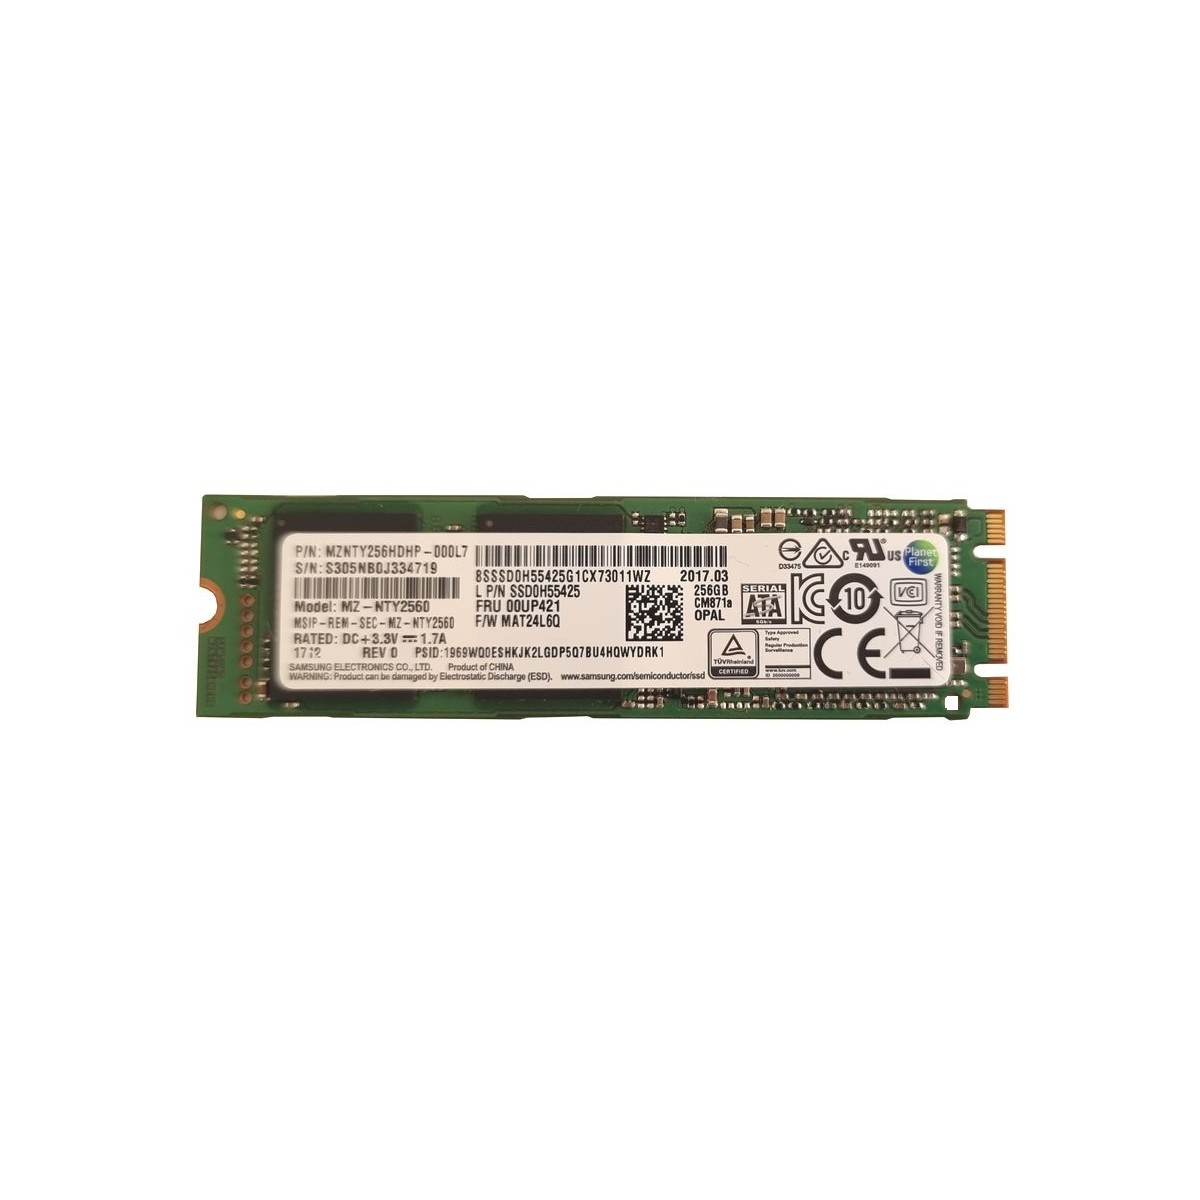 DYSK IBM SAMSUNG 256GB SSD M.2 SATA MZ-NTY2560